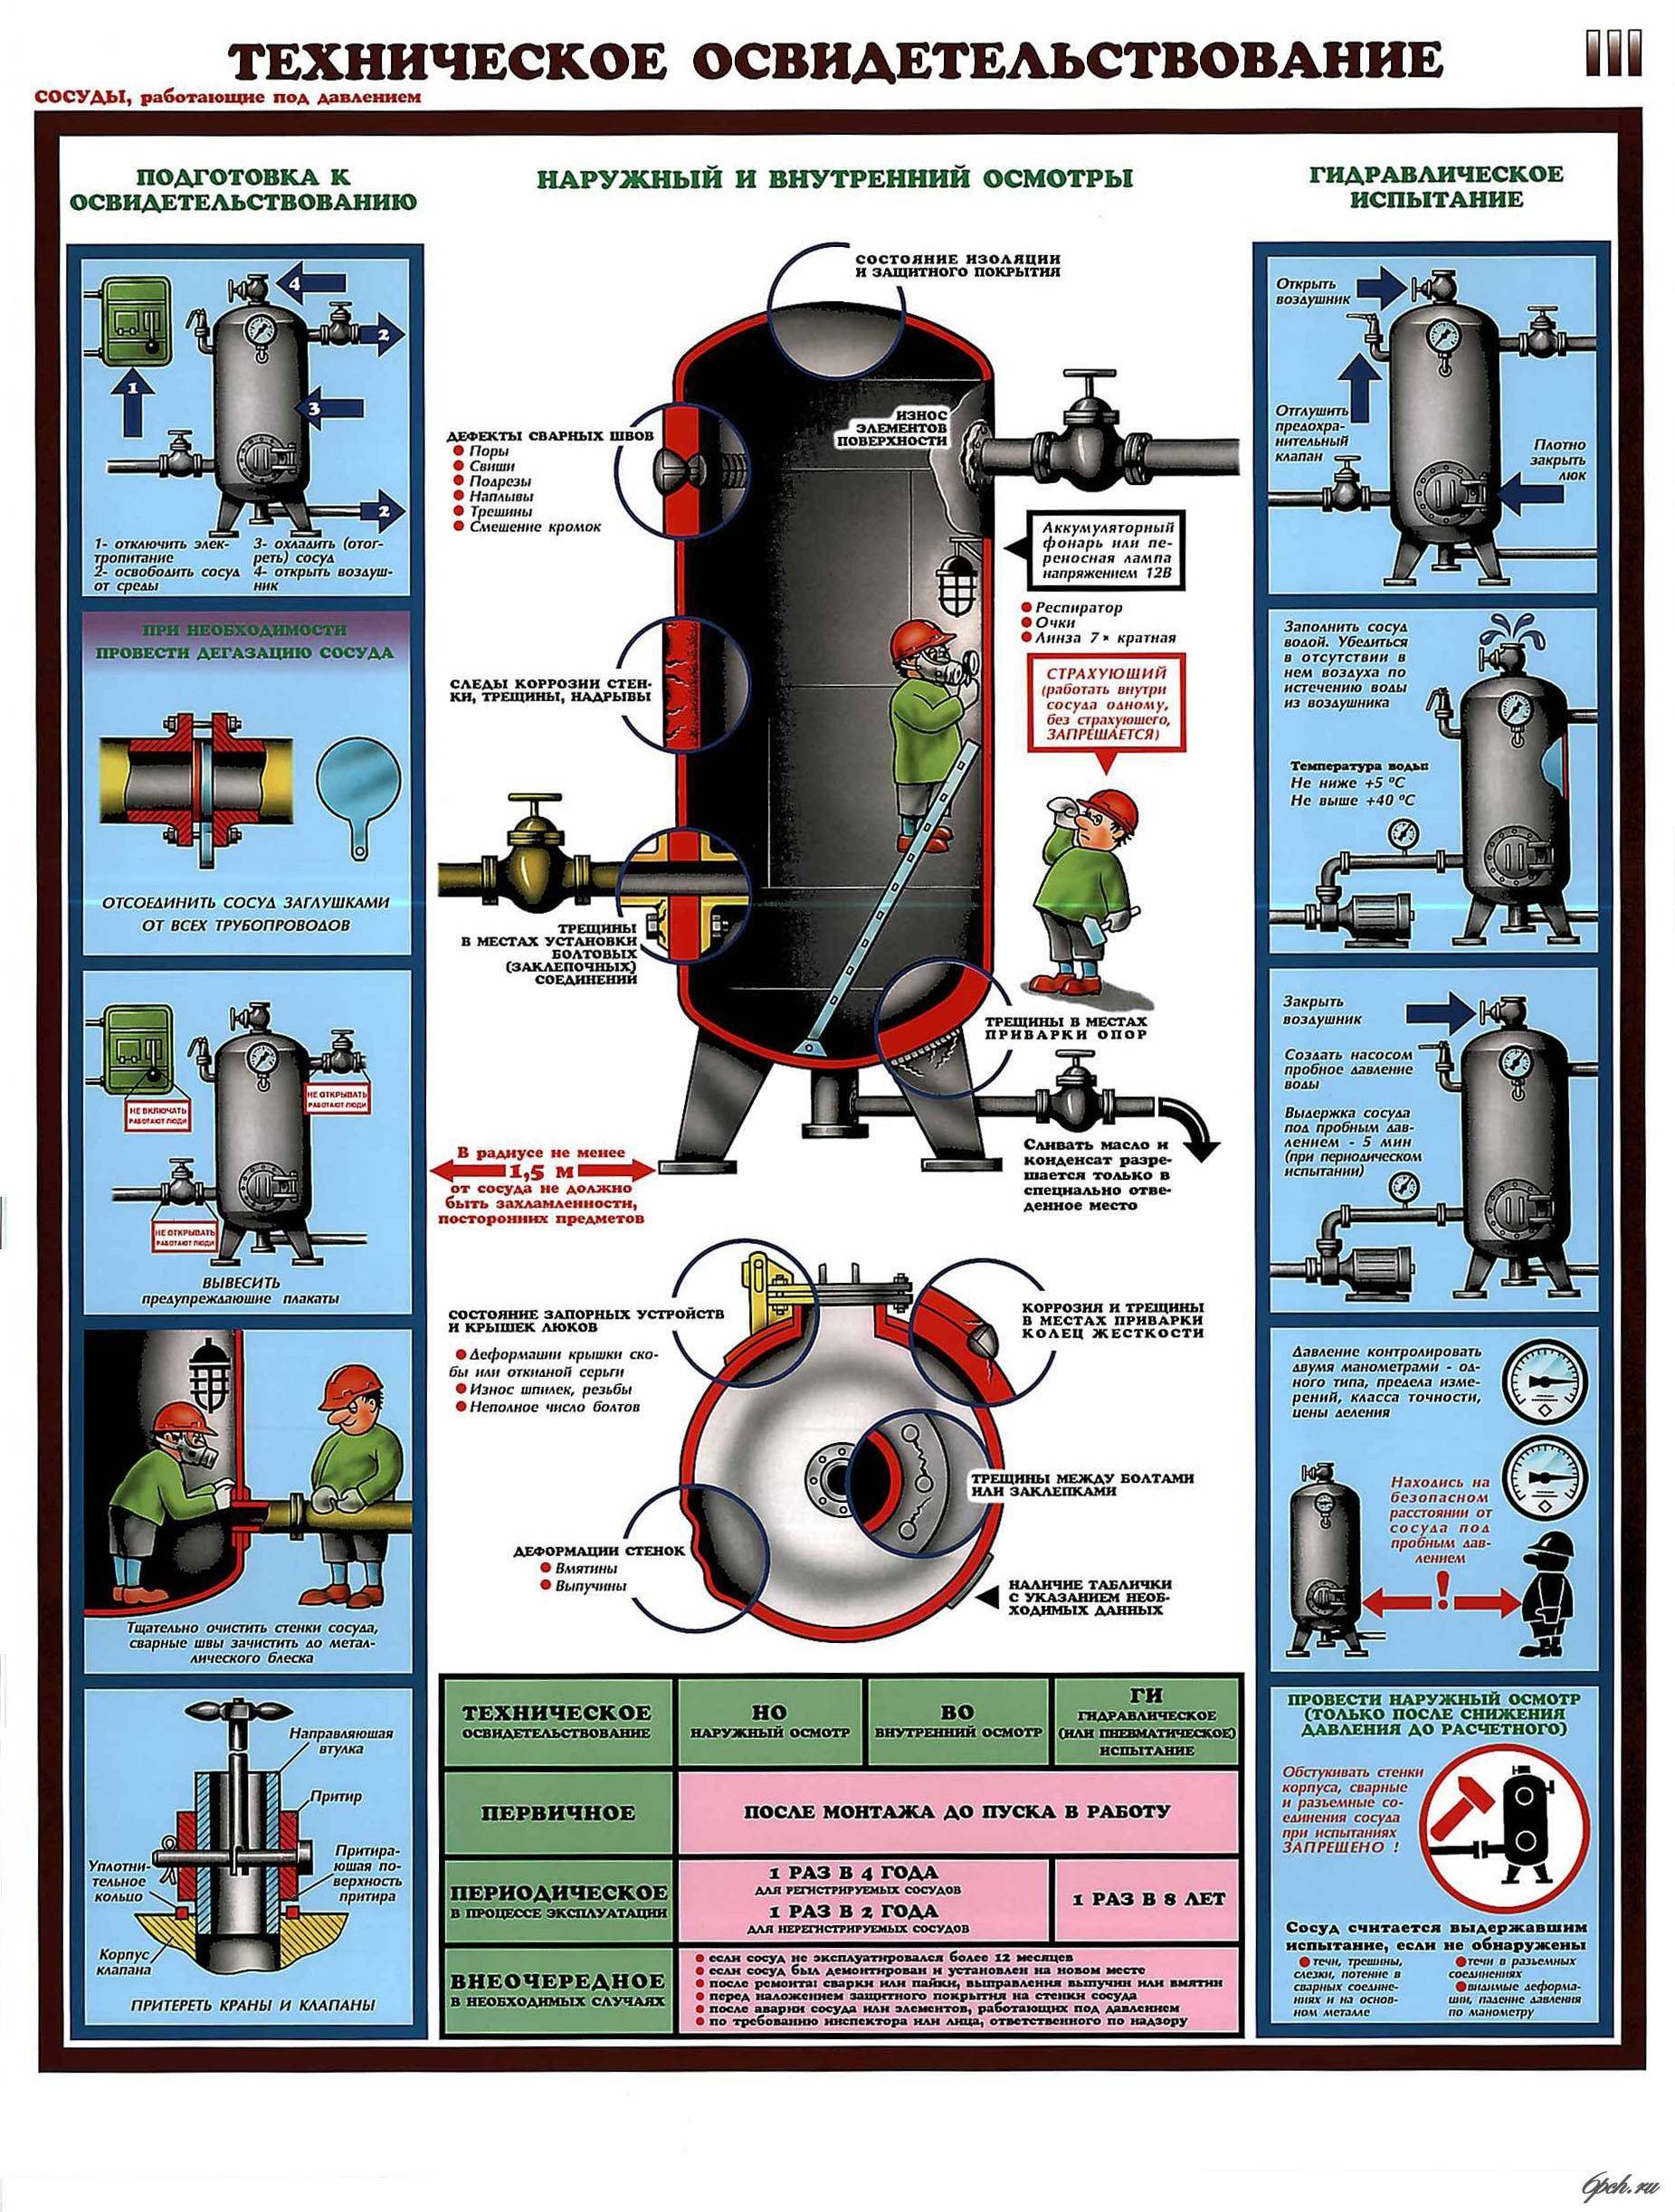 Опрессовка системы отопления: проведение гидроиспытаний, нормативы и порядок